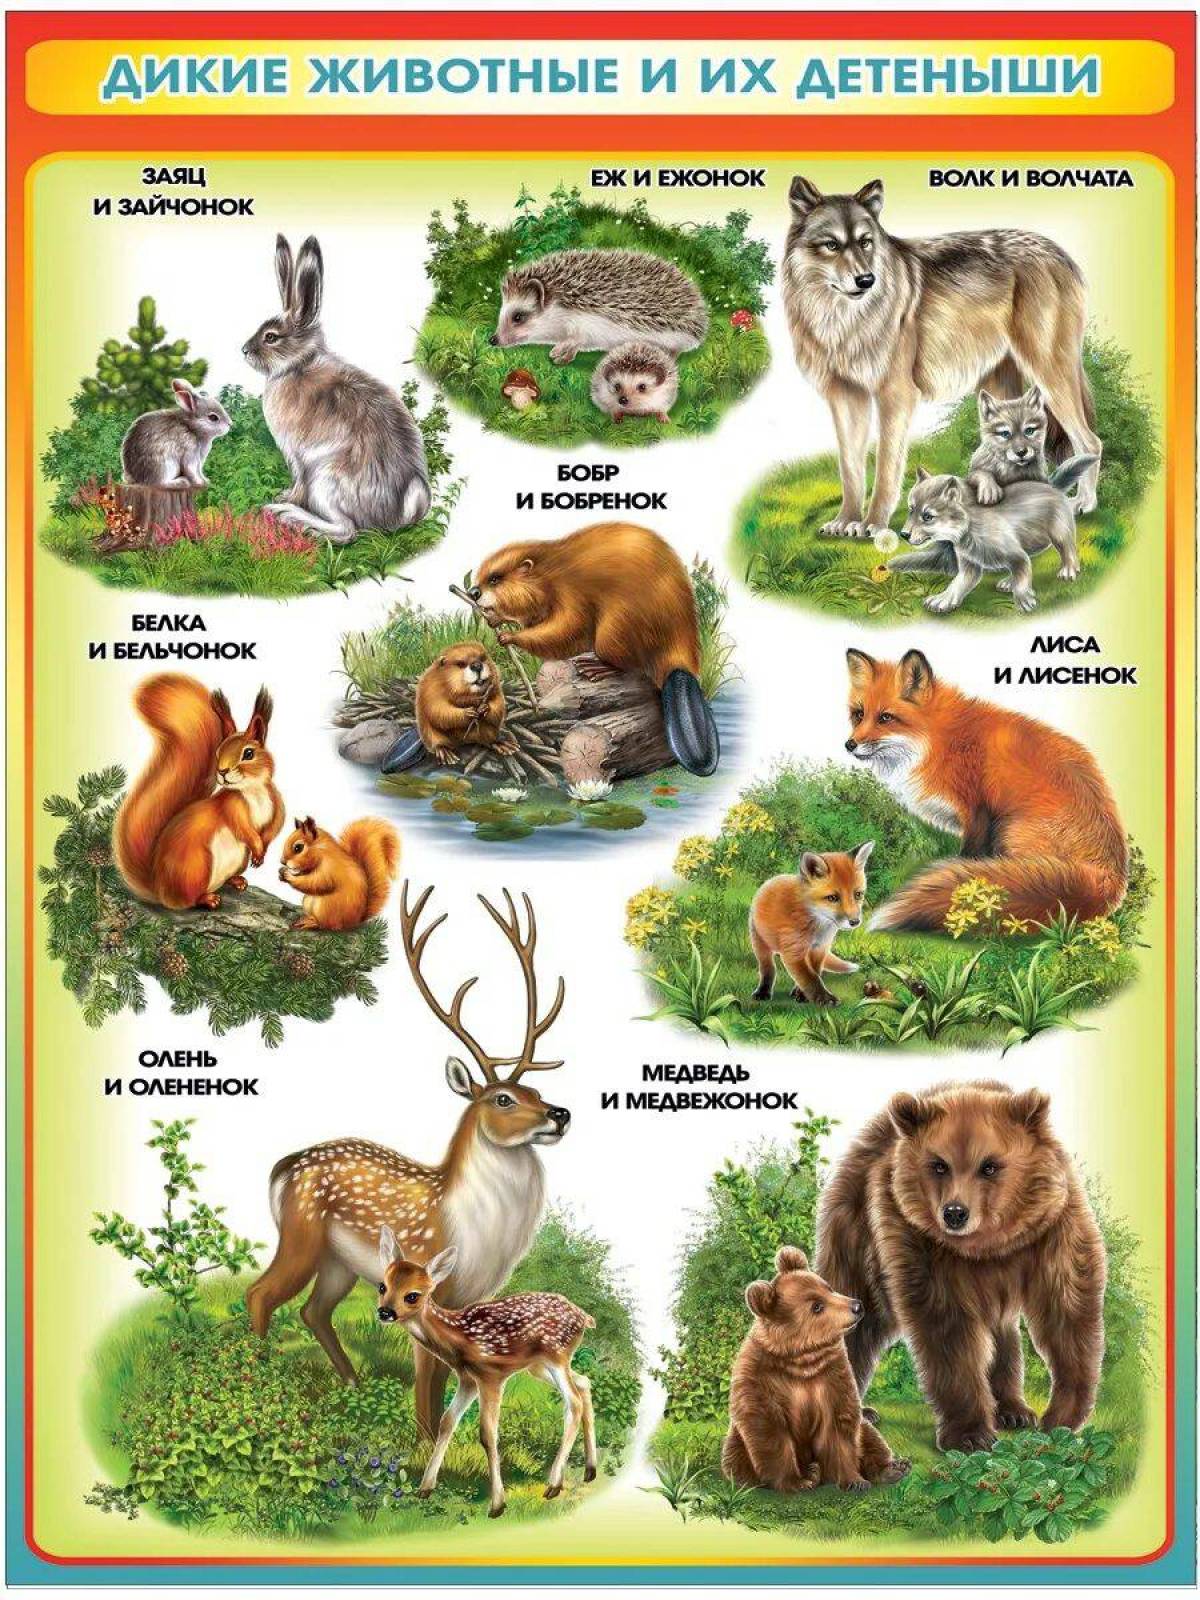 Для детей дикие животные и их детеныши #36